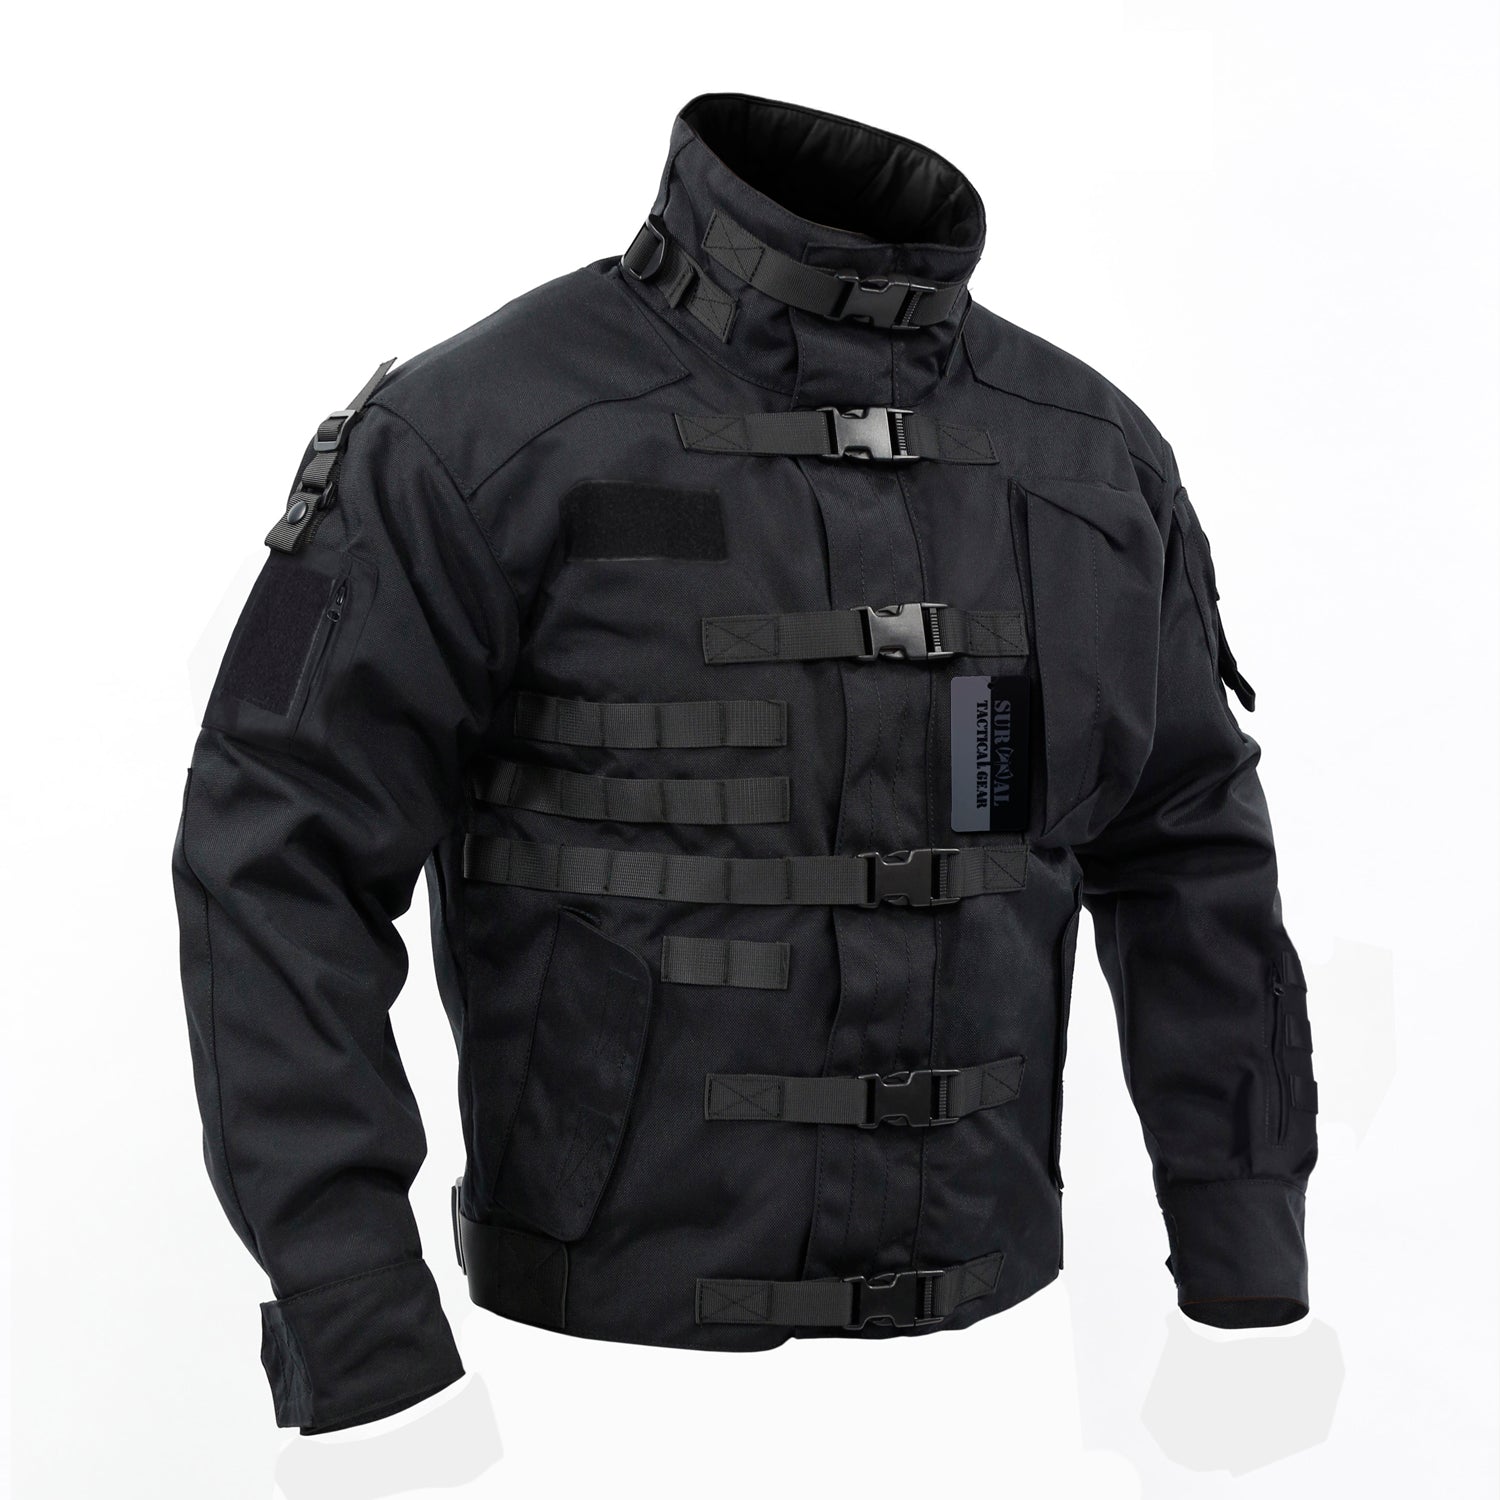 ZAPT actical Jacket 1000D CORDURA – ZAPTGEAR